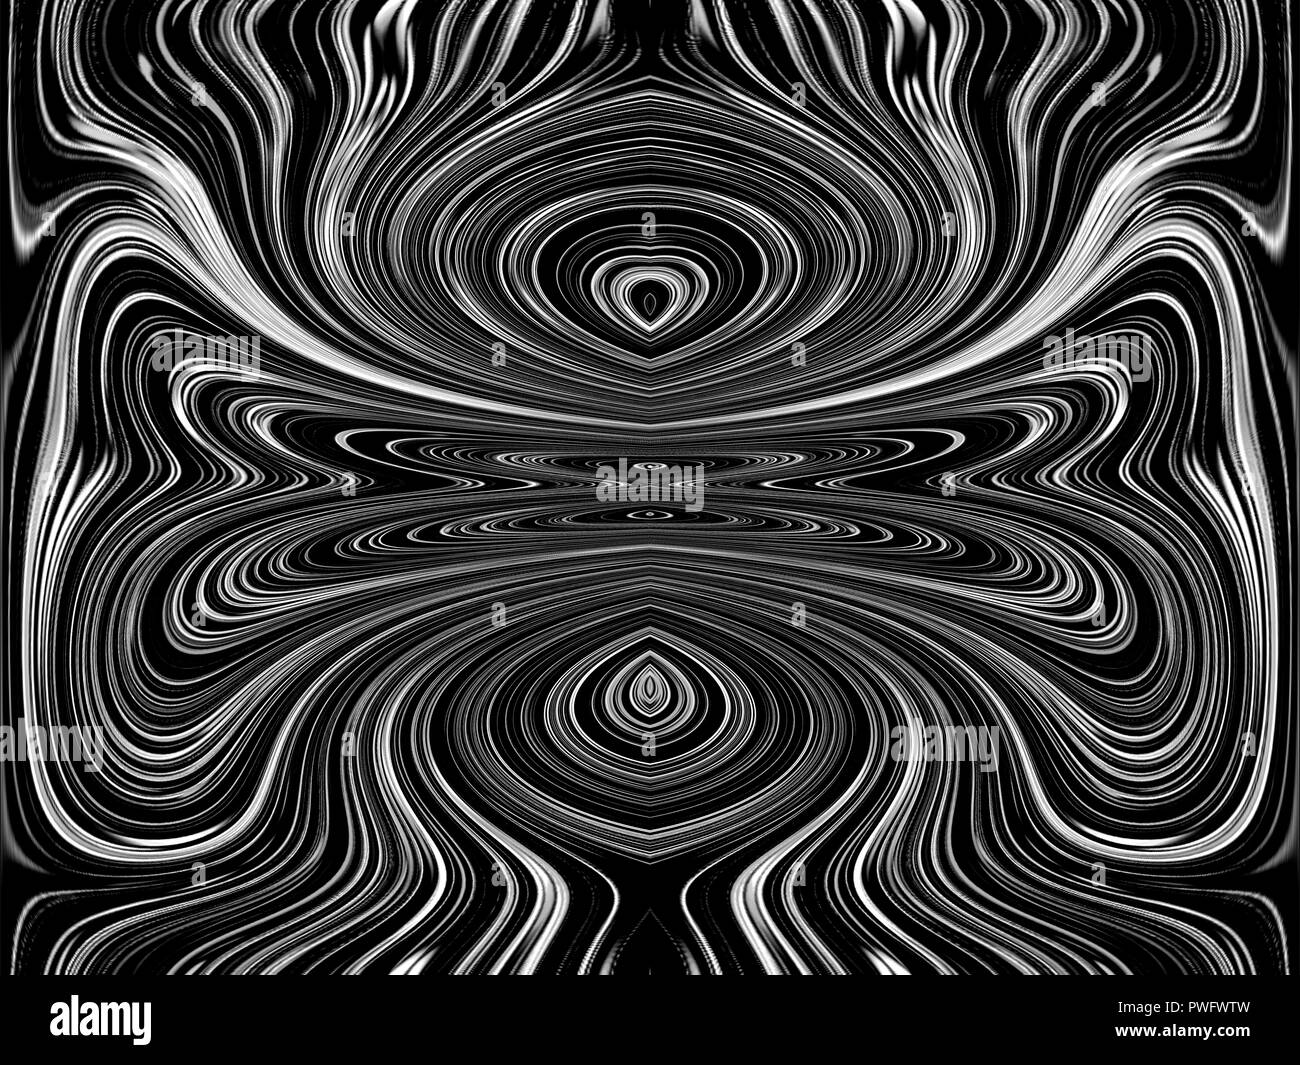 Schwarze und weiße Linien und Kurven erzeugt fantastische Bilder. Abstrakte Malerei - psychedelische Bilder. Stockfoto